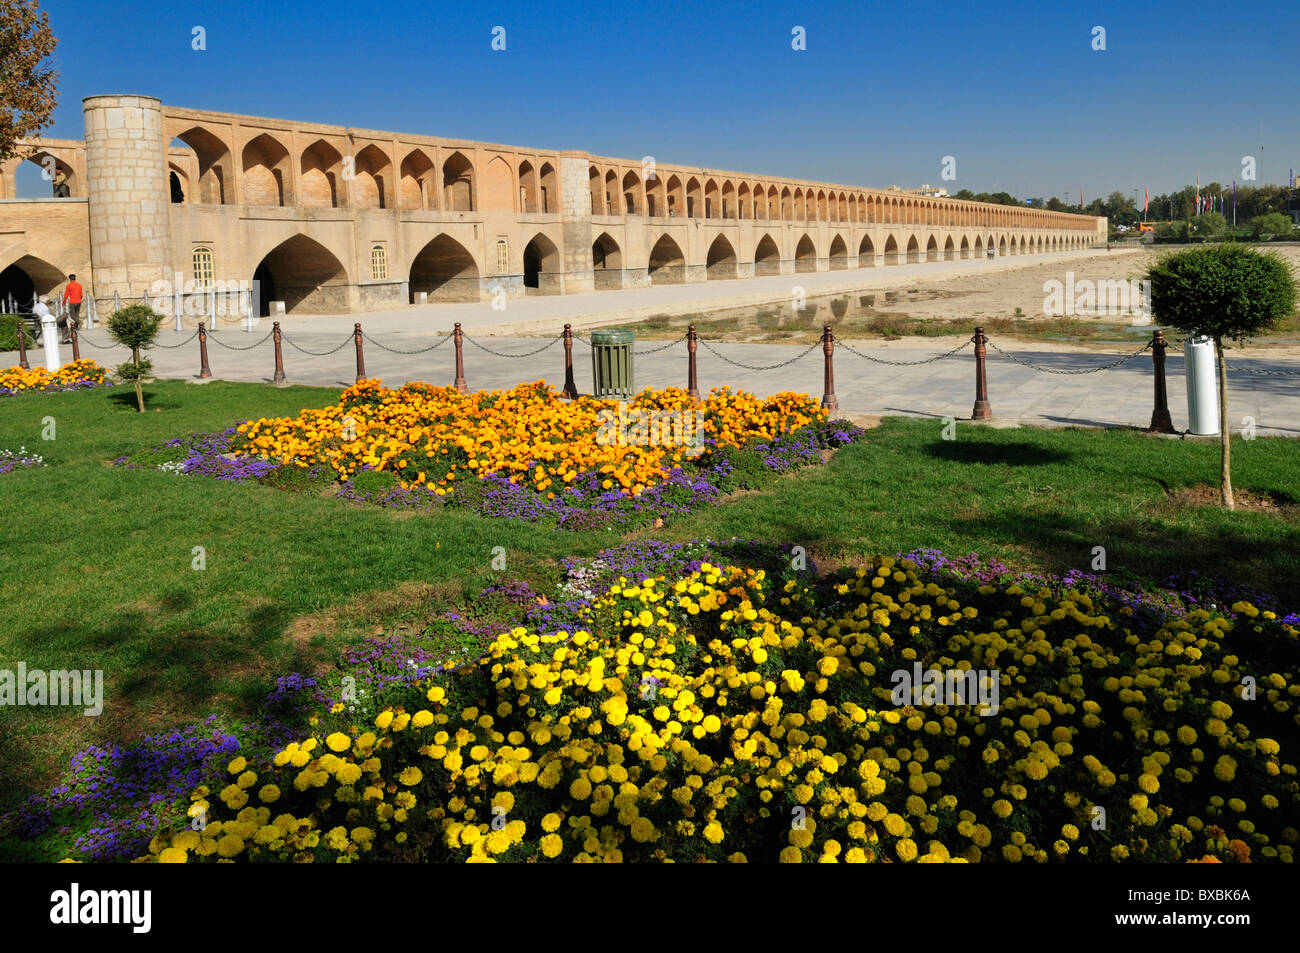 Allah-Verdi-Khan ou Si-O-Se Pol bridge, Ispahan, Isfahan, Site du patrimoine mondial de l'UNESCO, la Perse, l'Iran, l'Asie Banque D'Images